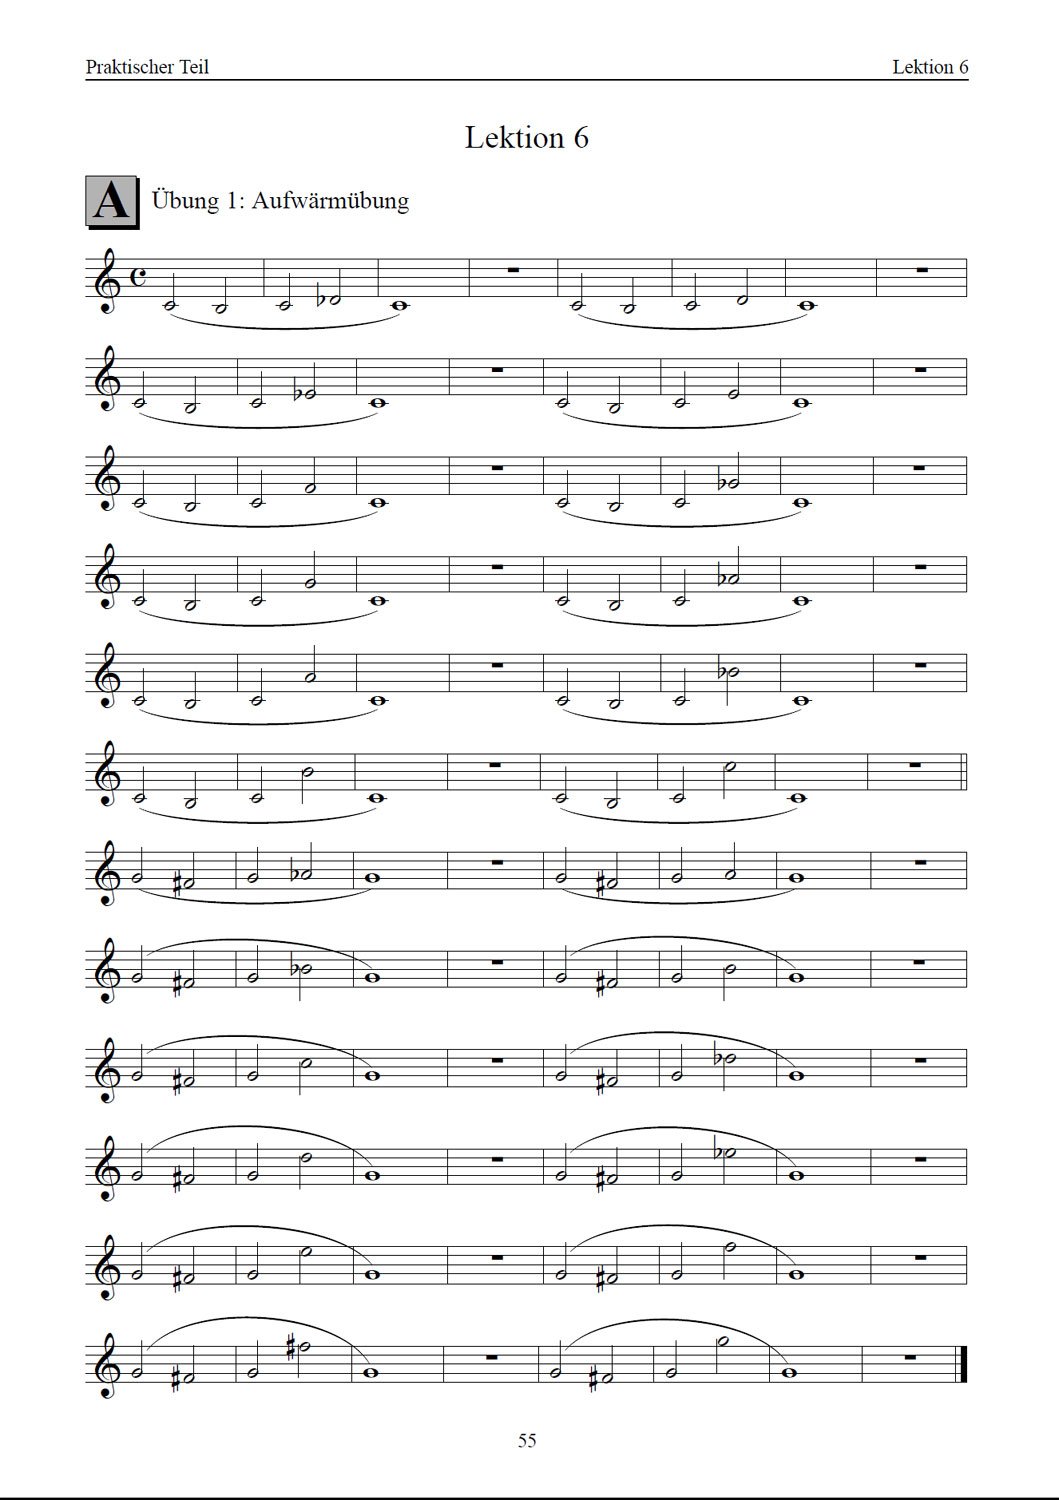 Trompete lernen - leicht gemacht Band2 